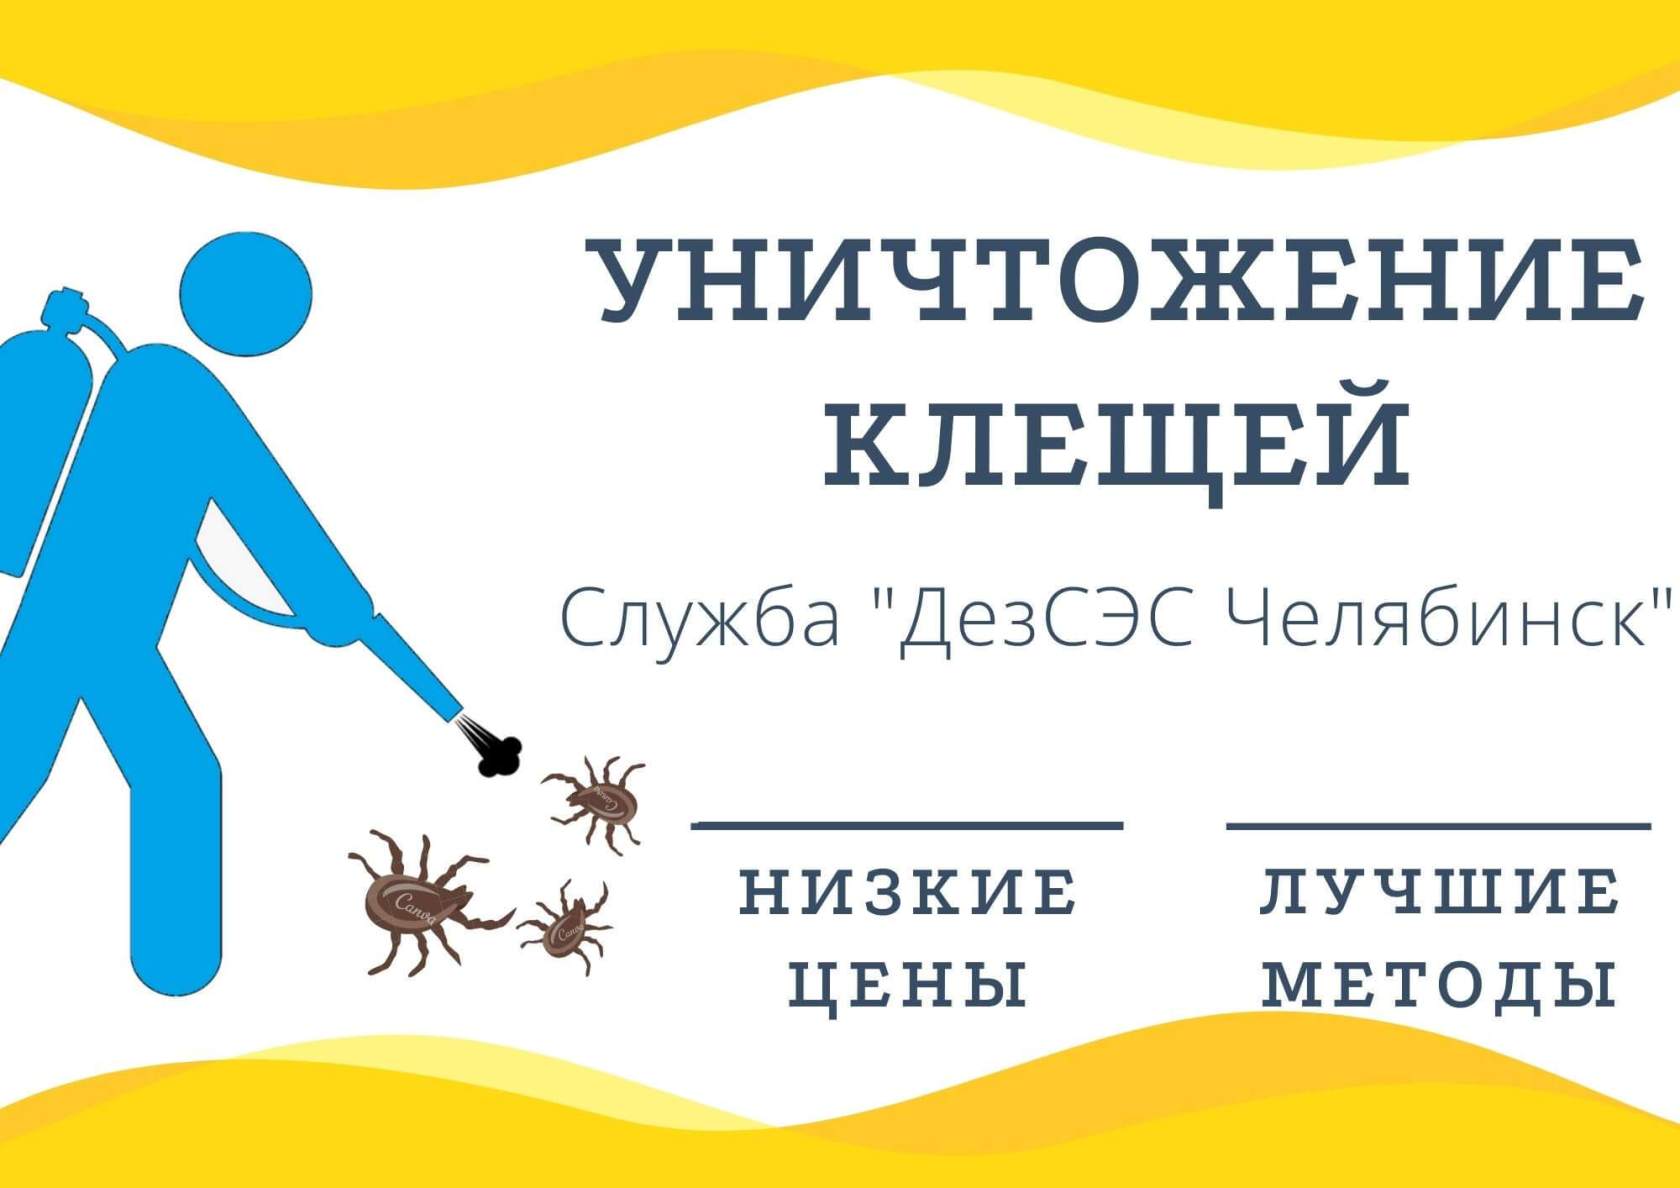 Уничтожение клещей в Челябинске - низкие цены, хорошие отзывы